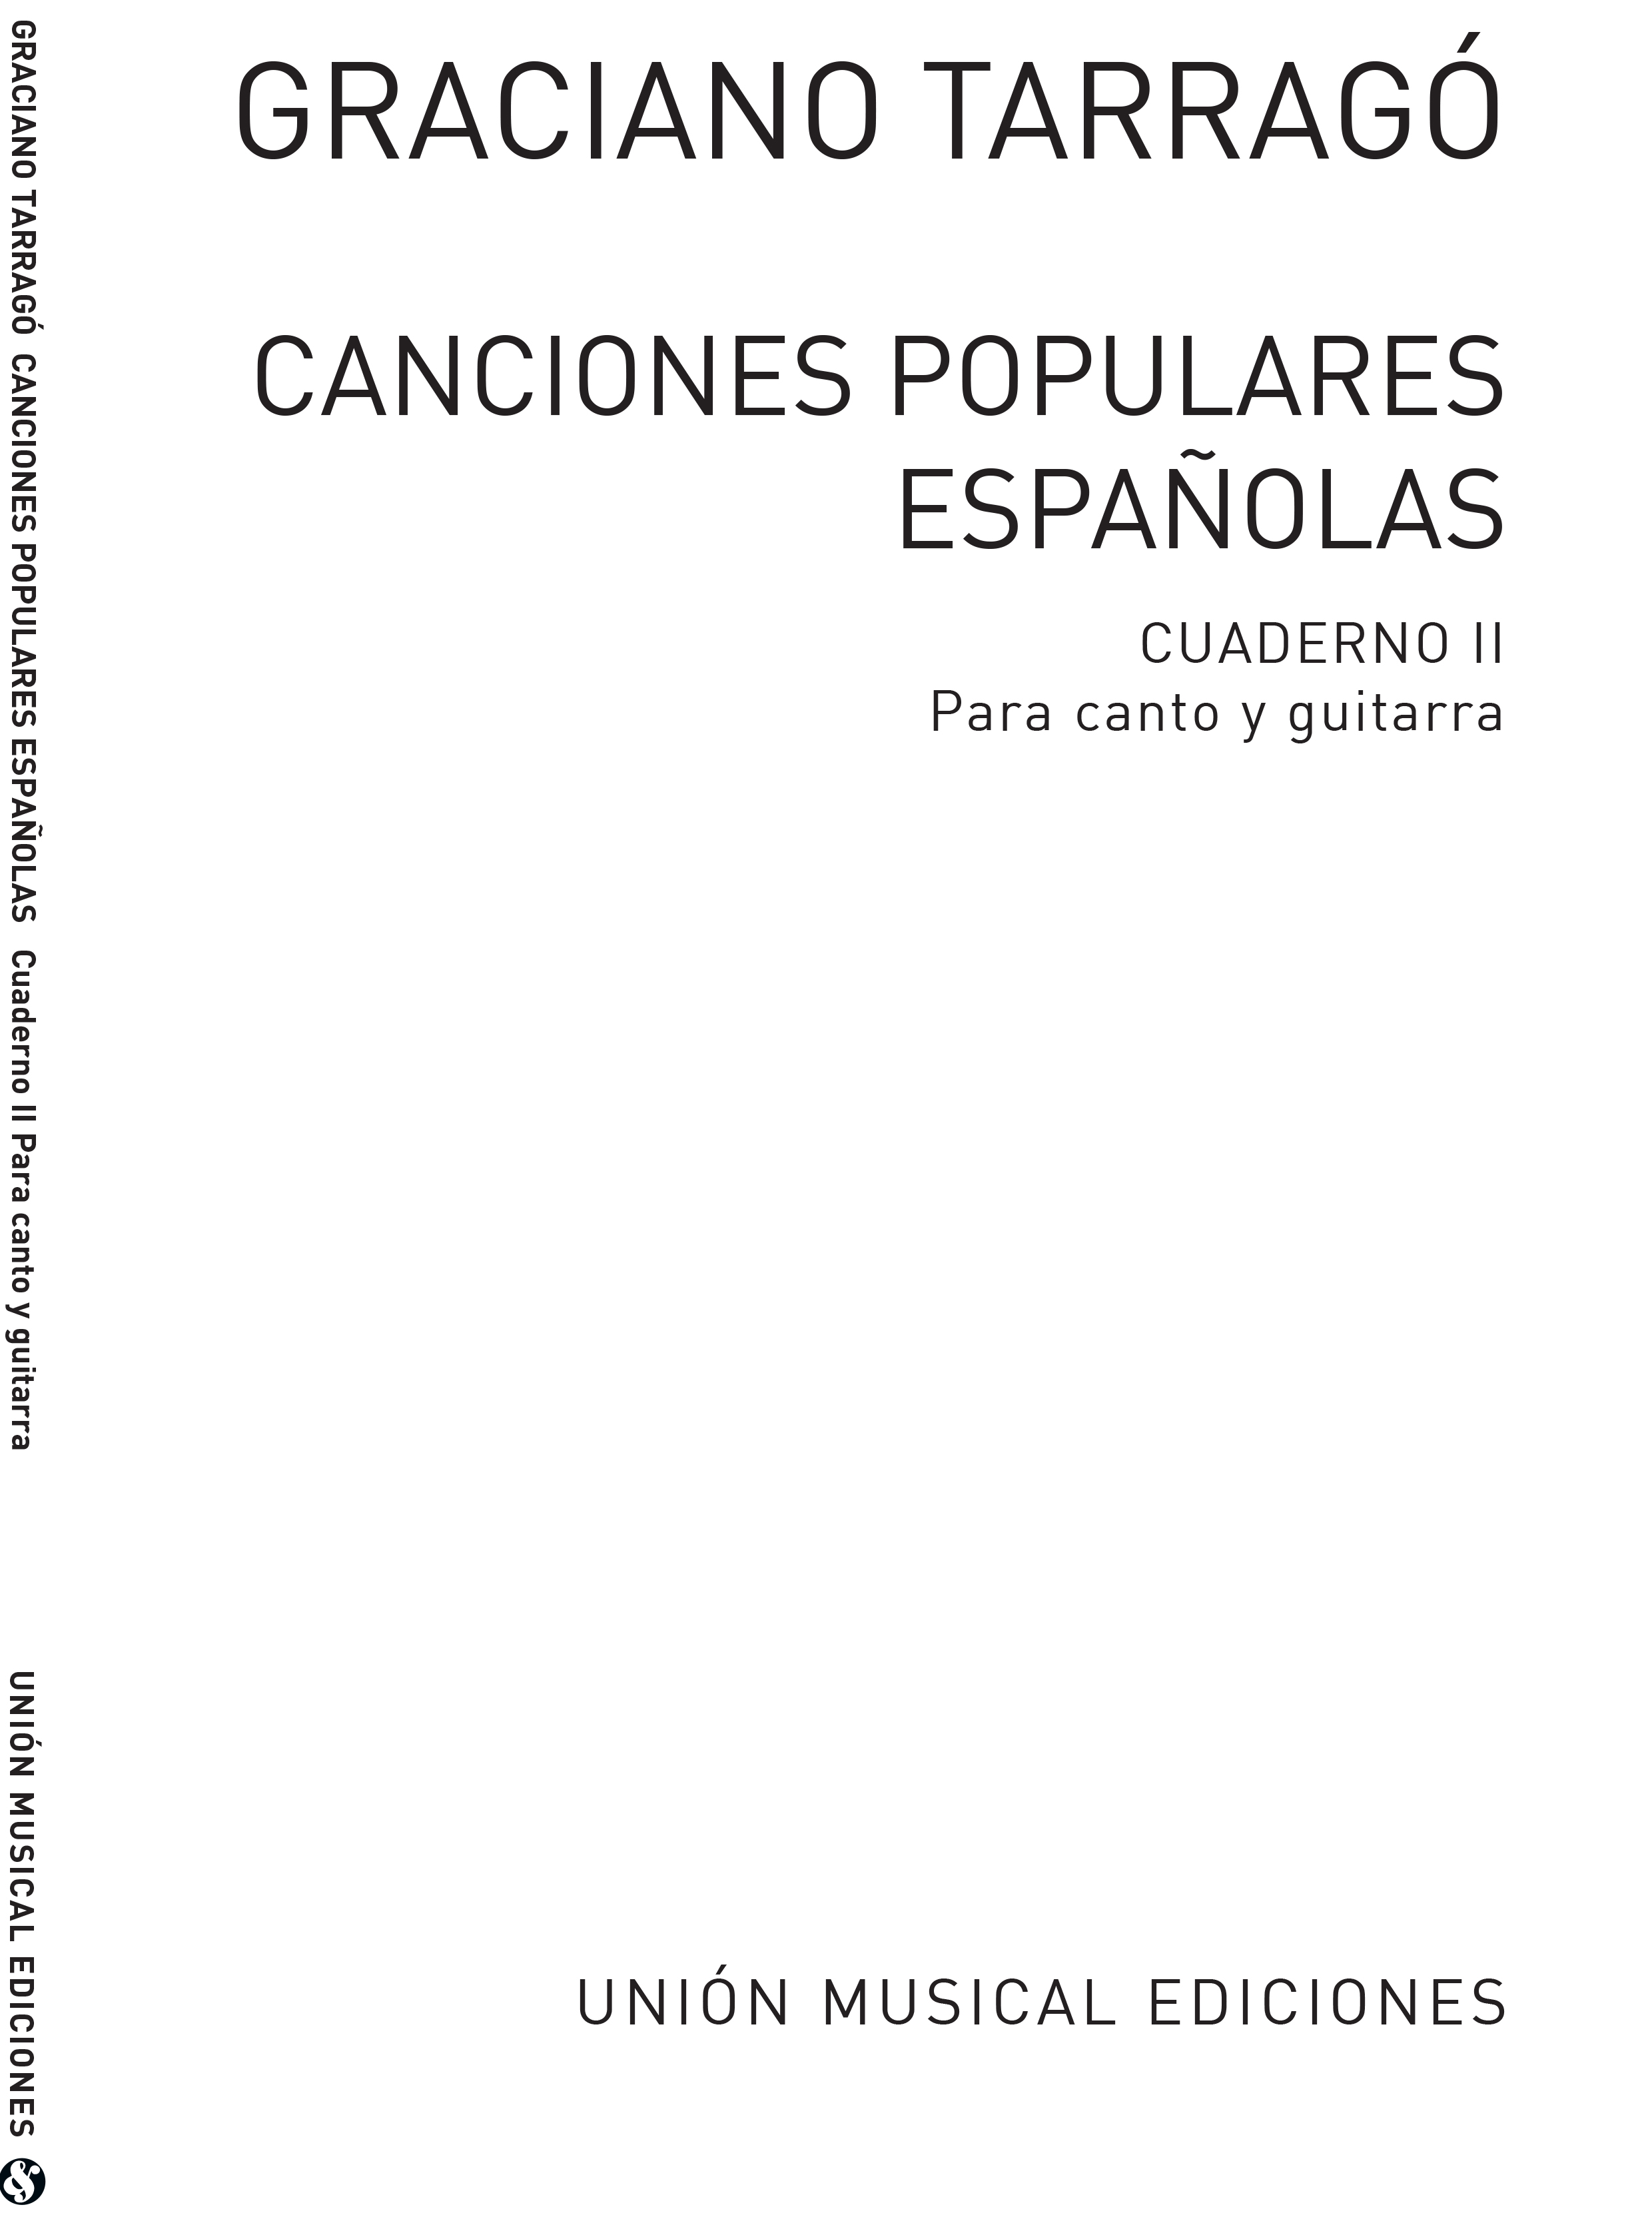 Graciano Tarrag: Canciones Populares Espanolas Cuaderno Ii: Voice: Score